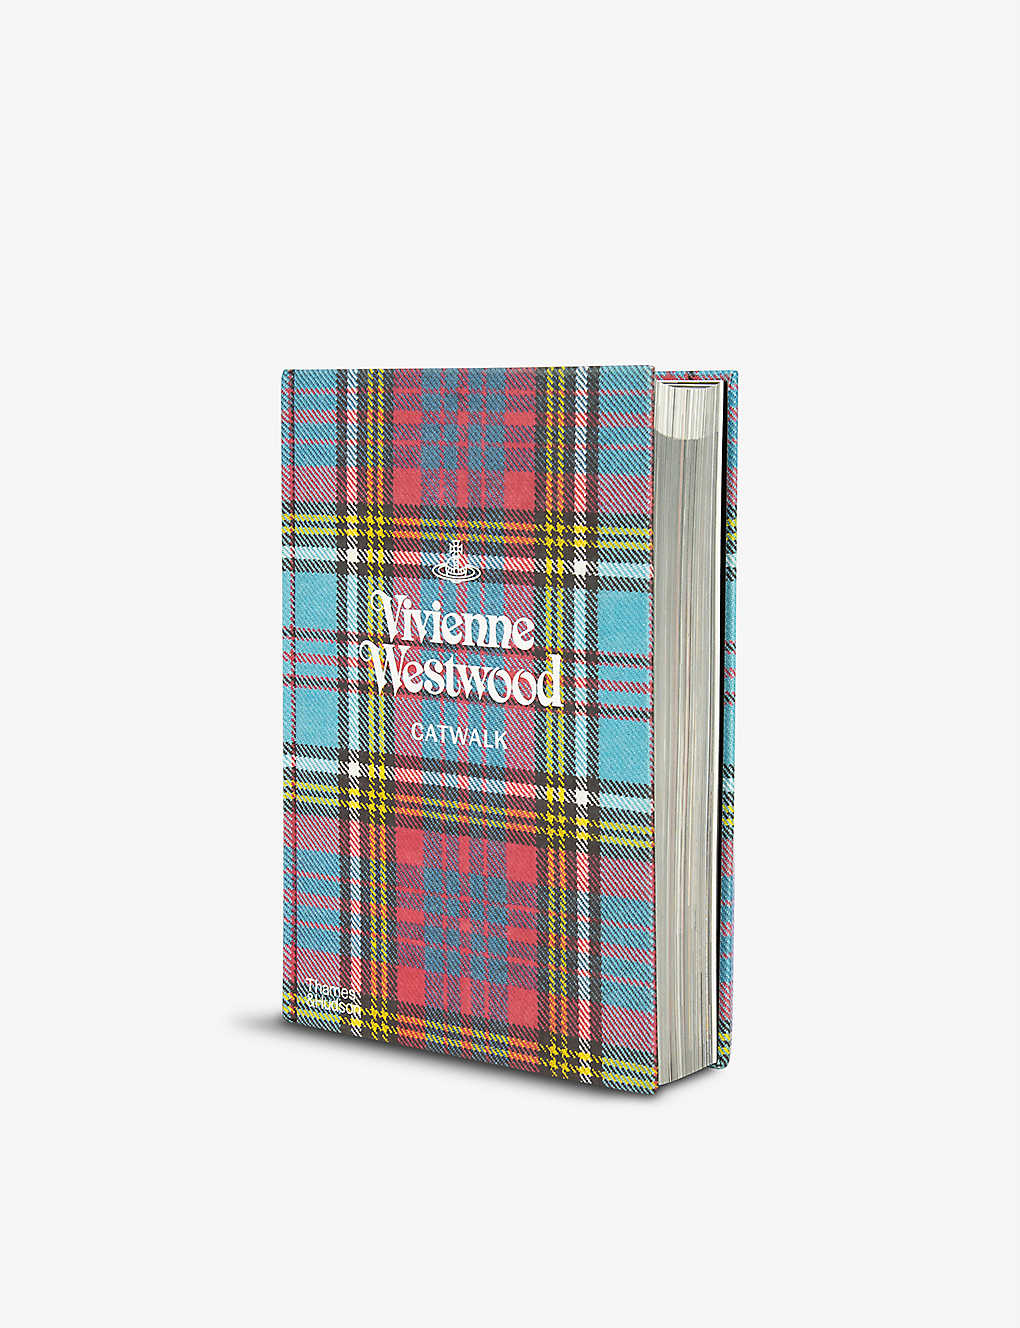 THAMES & HUDSON Vivienne Westwood Catwalk book